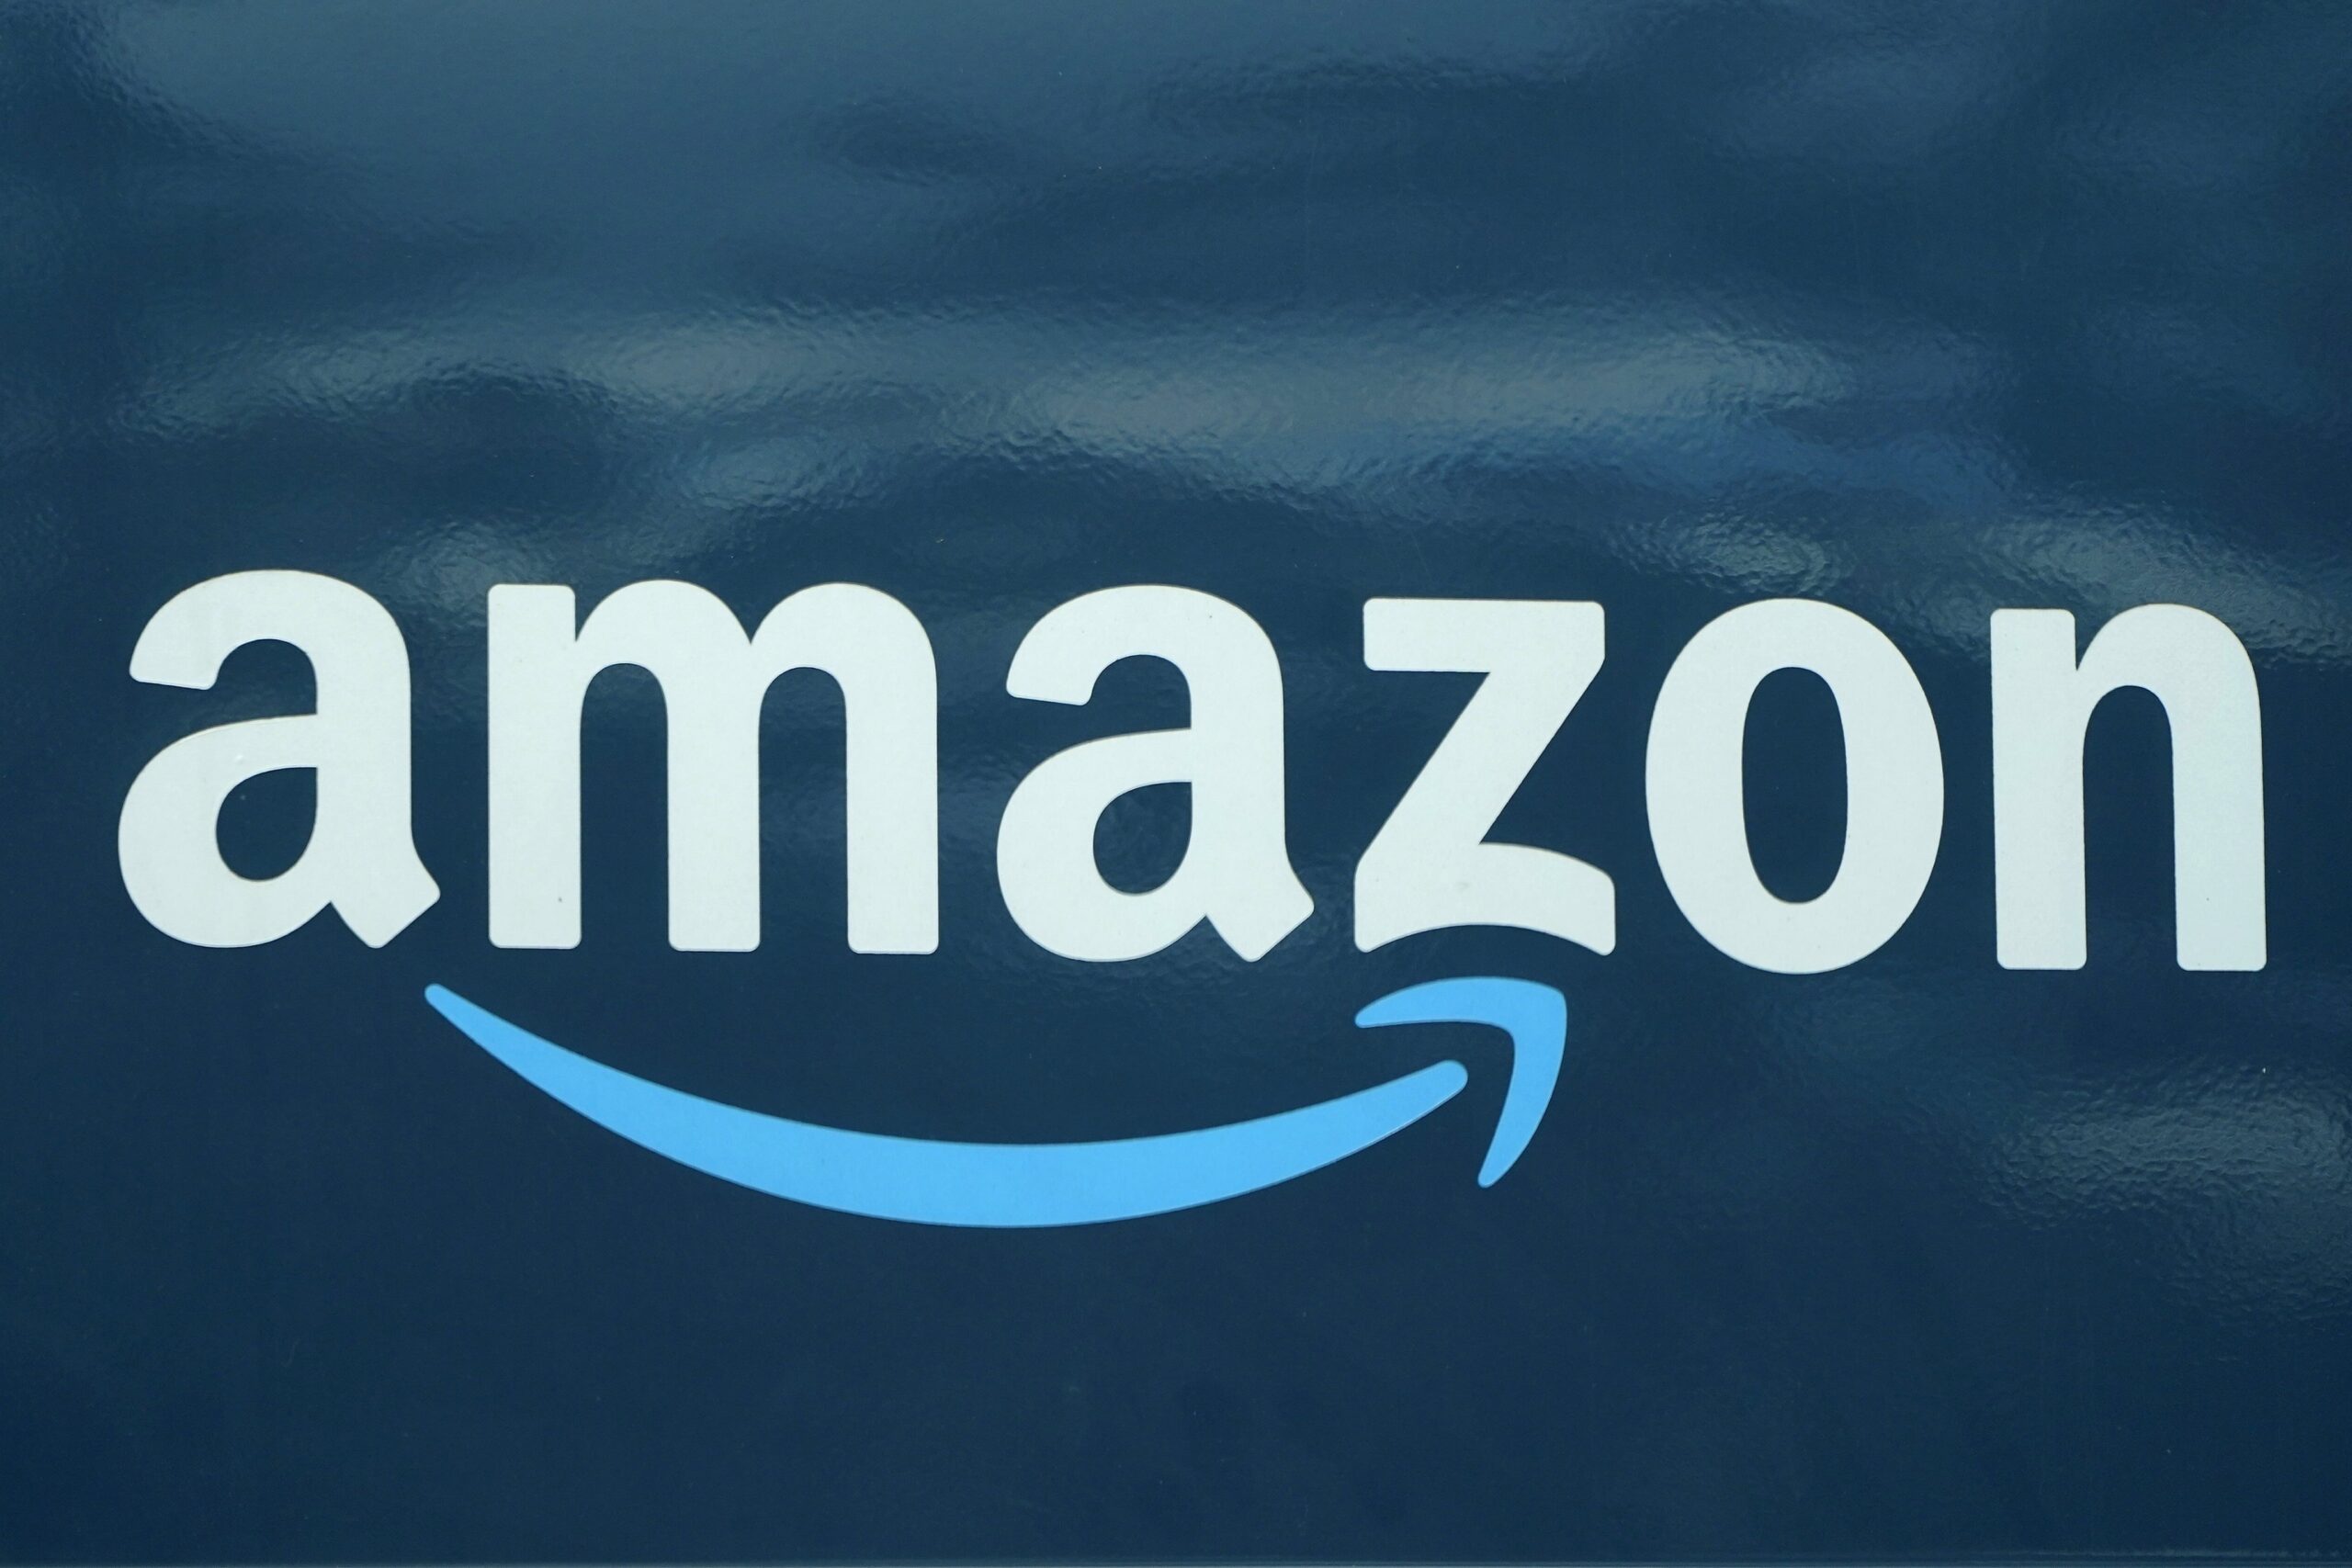 Amazon 1,28 milyar dolar para cezasıyla karşı karşıya